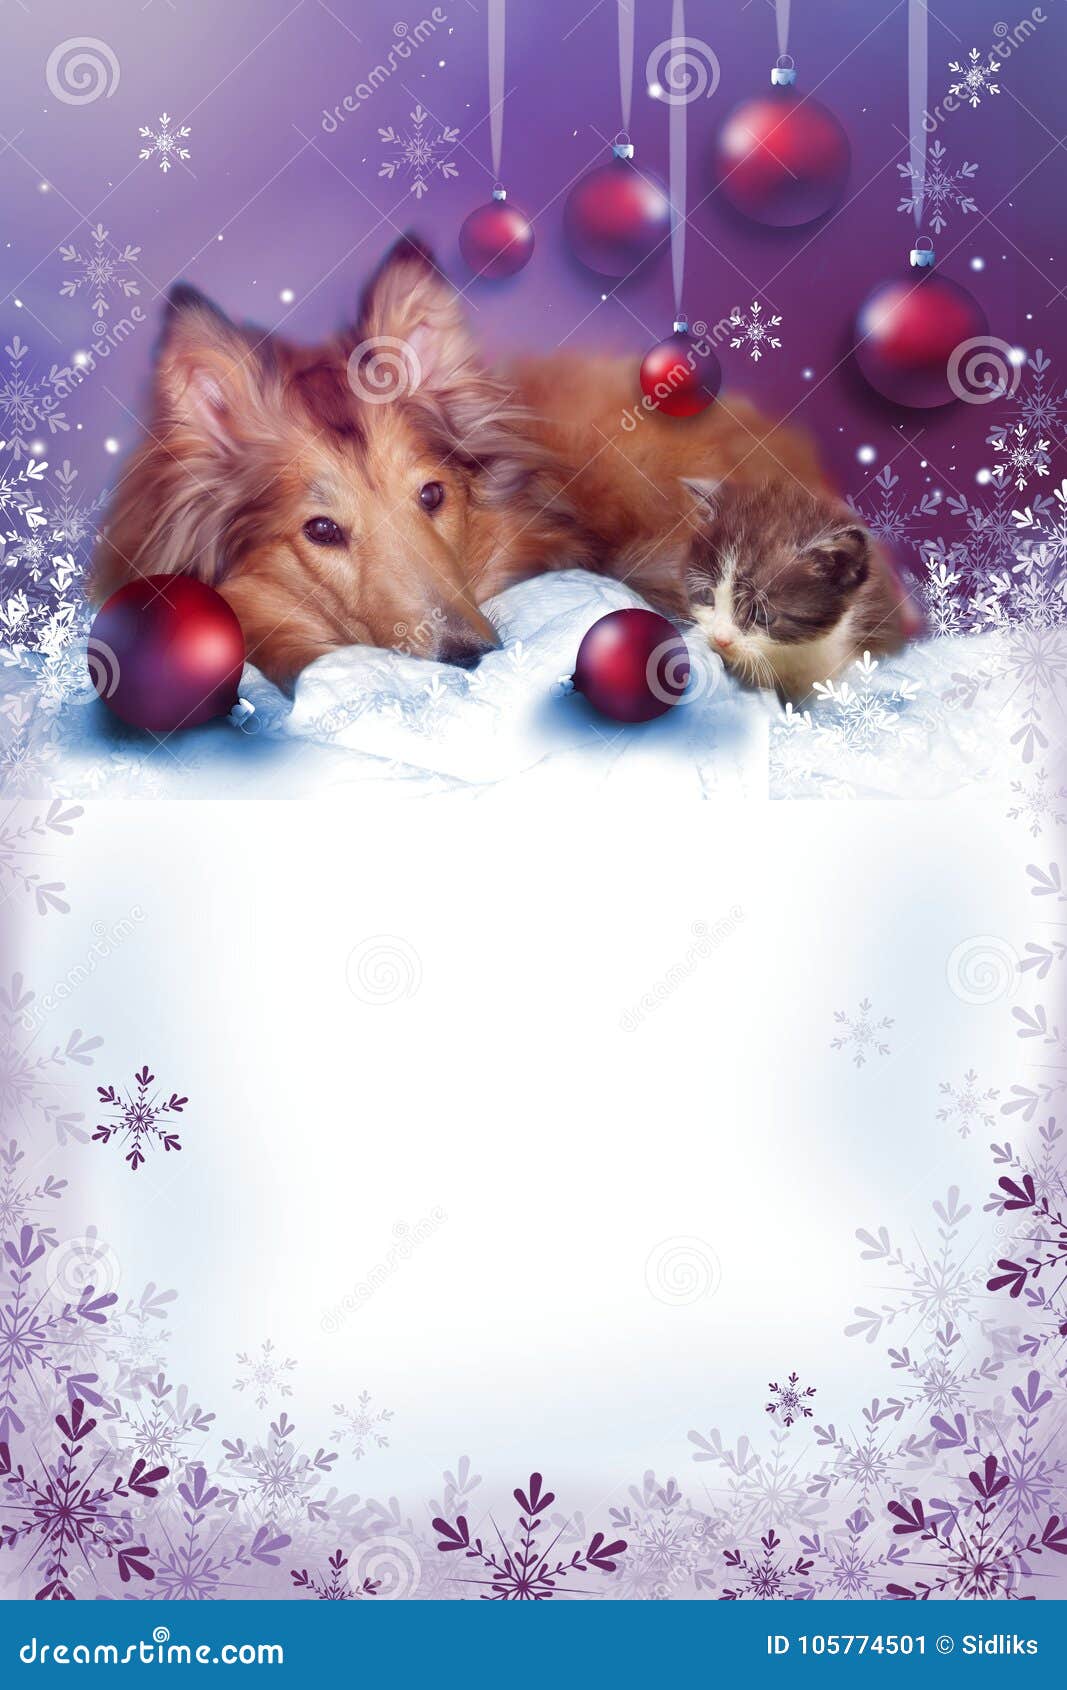 Foto Di Natale Con Animali.Cartolina D Auguri Di Natale Con Gli Animali Domestici Immagine Stock Immagine Di Grafico Pink 105774501